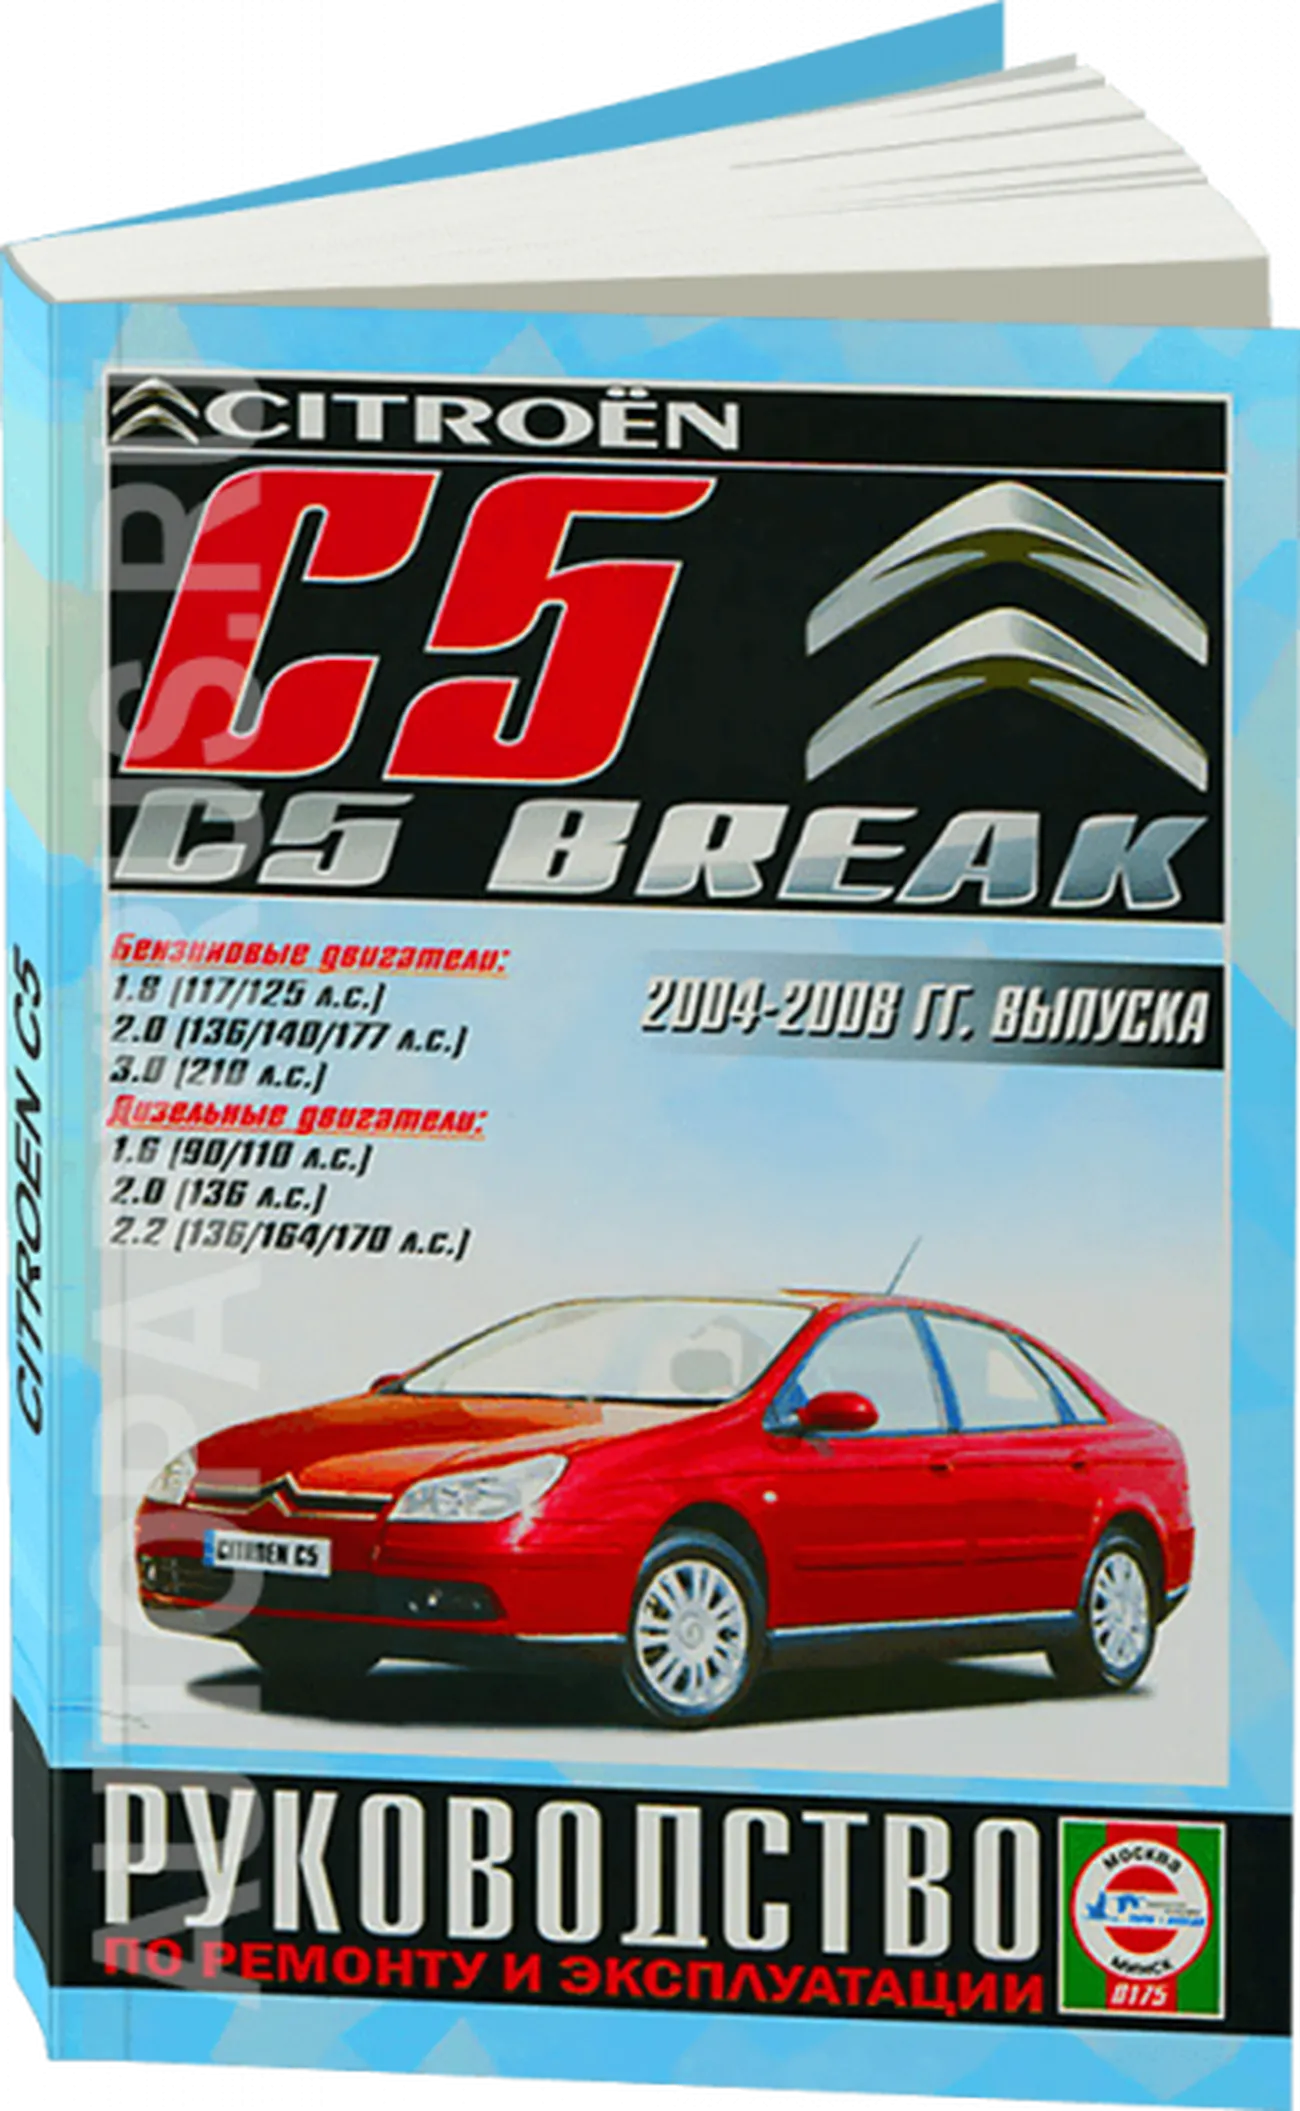 Книга: CITROEN C5 / C5 BREAK (б , д) 2004-2008 г.в., рем., экспл., то | Чижовка